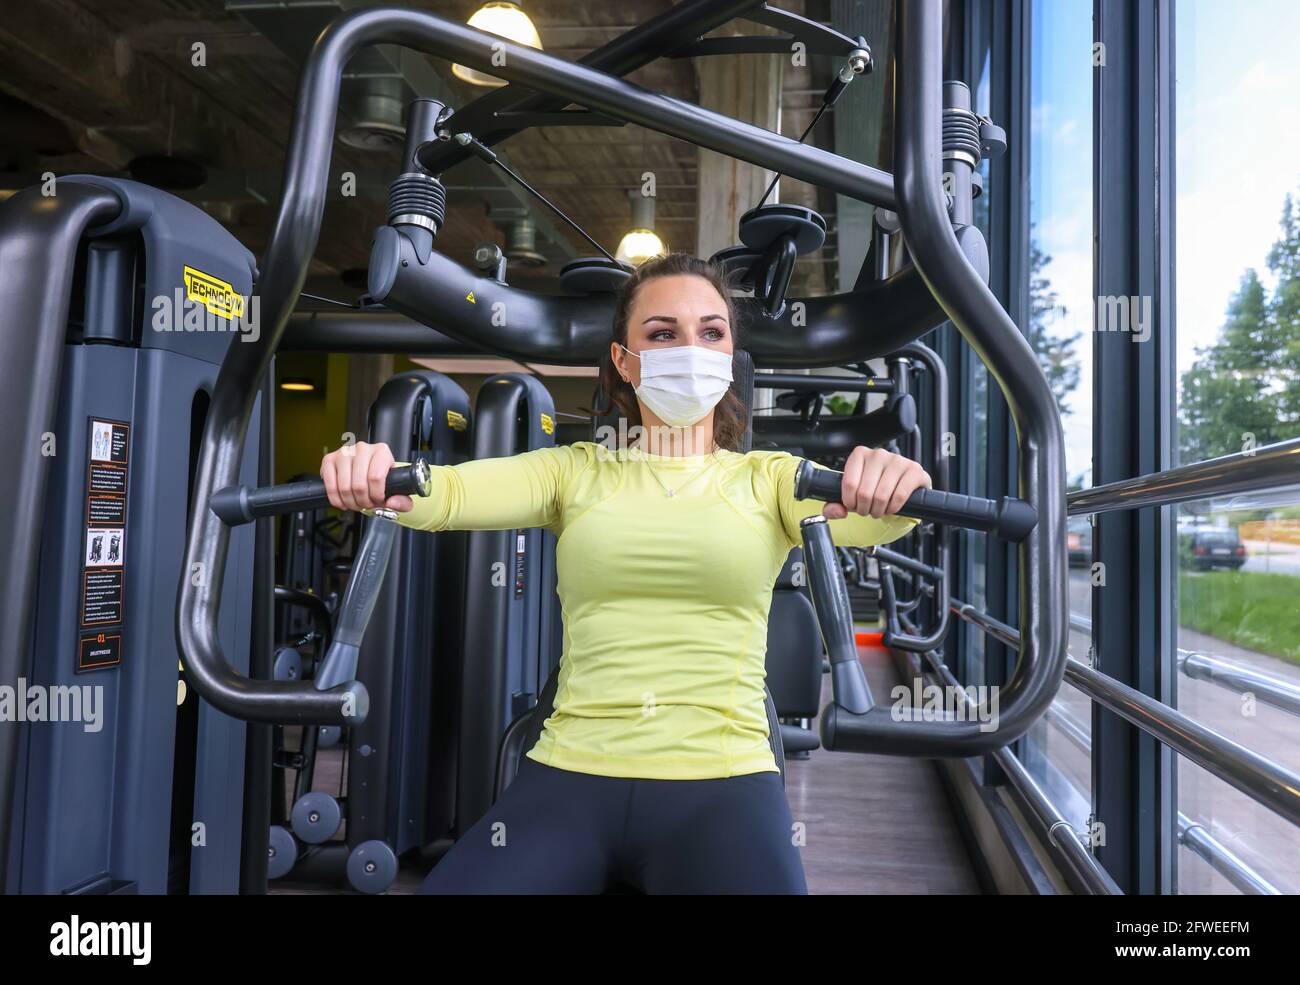 Essen, Nord Reno-Westfalia, Germania - allenamento fitness in tempi della corona Pandemic, Veronika dopo il lungo blocco durante il suo primo allenamento Foto Stock